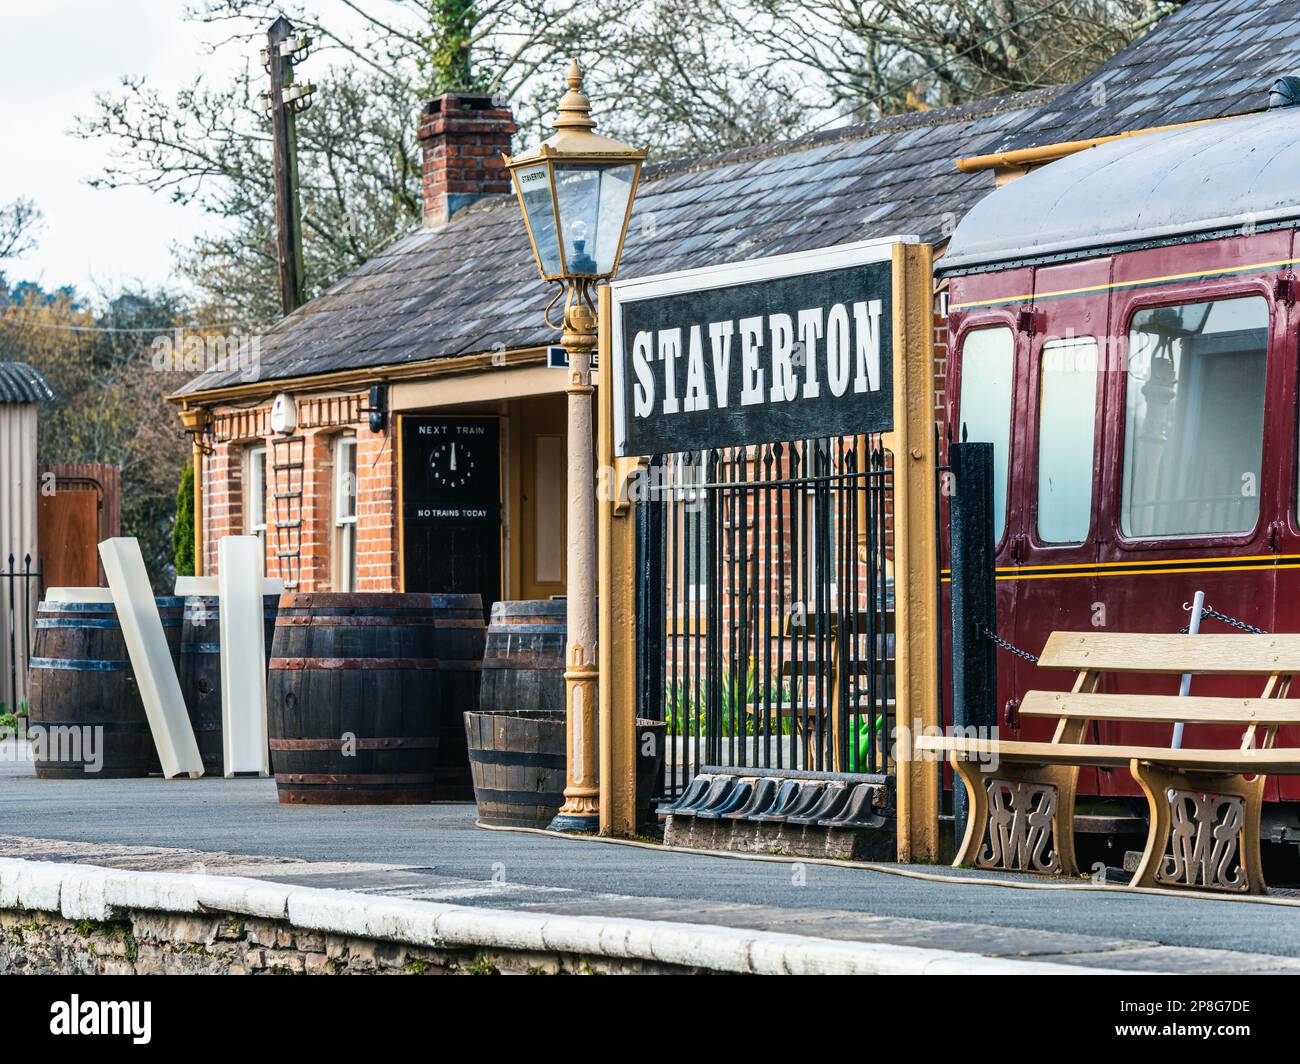 South Devon Railway Trust in Staverton - English Village, Totnes, Devon, England, UK Stock Photo